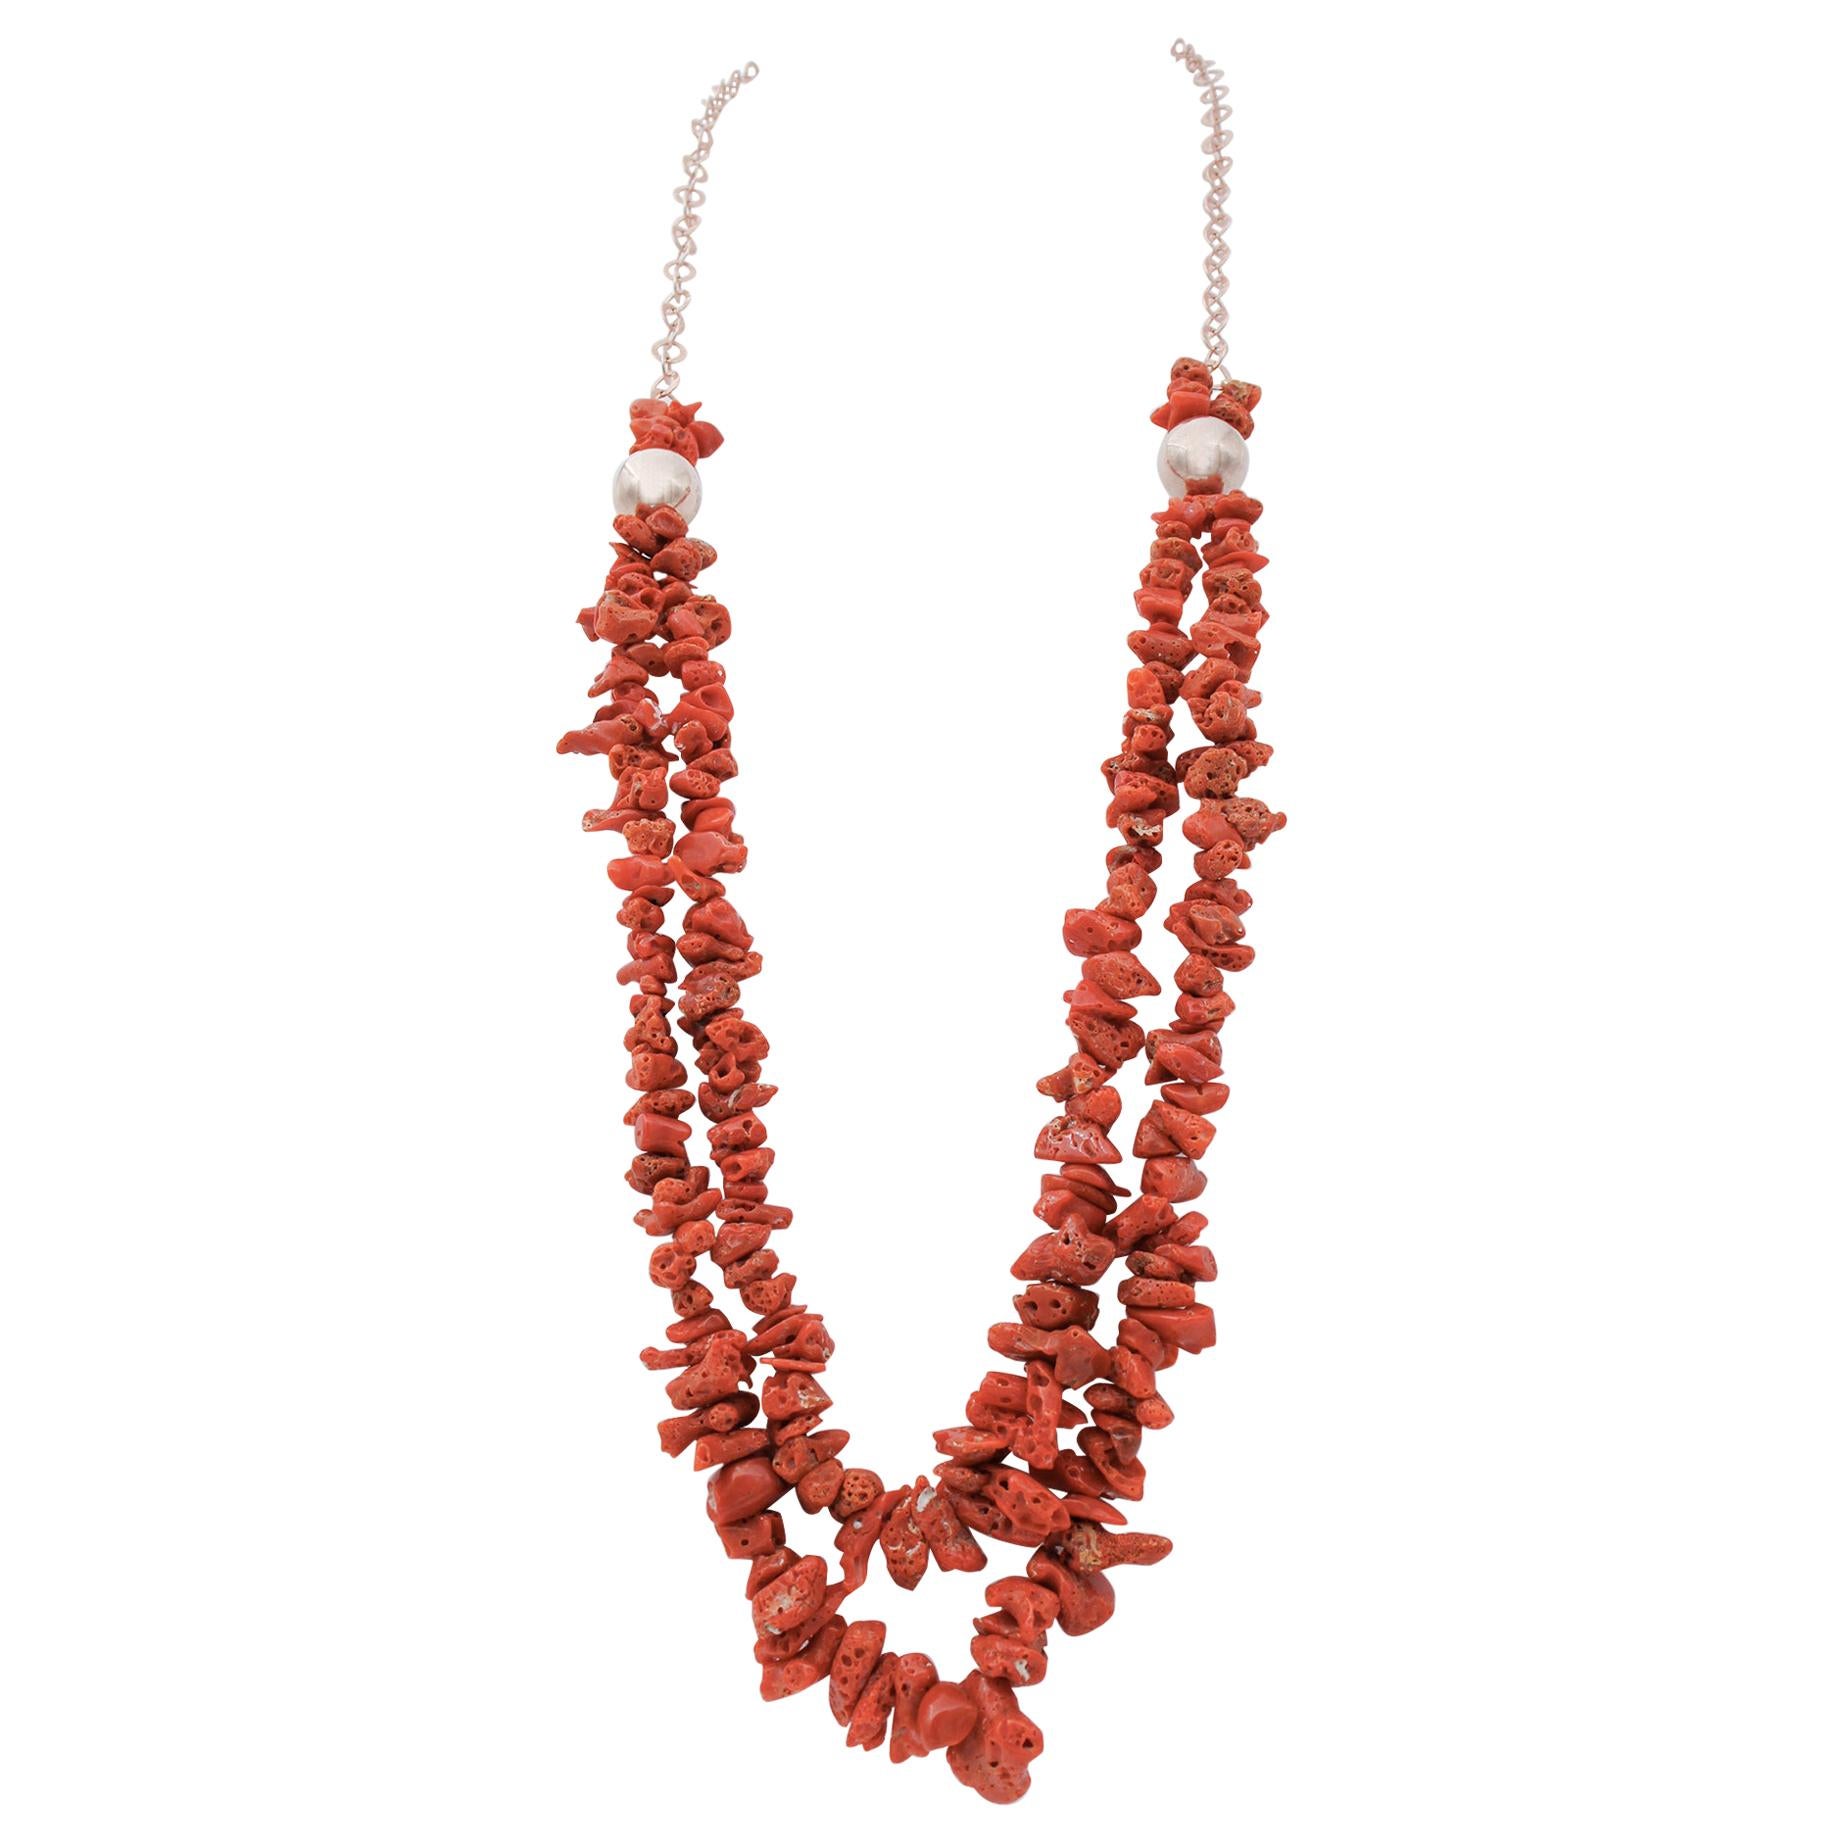 Italian Coral, Multi-Strands Necklace